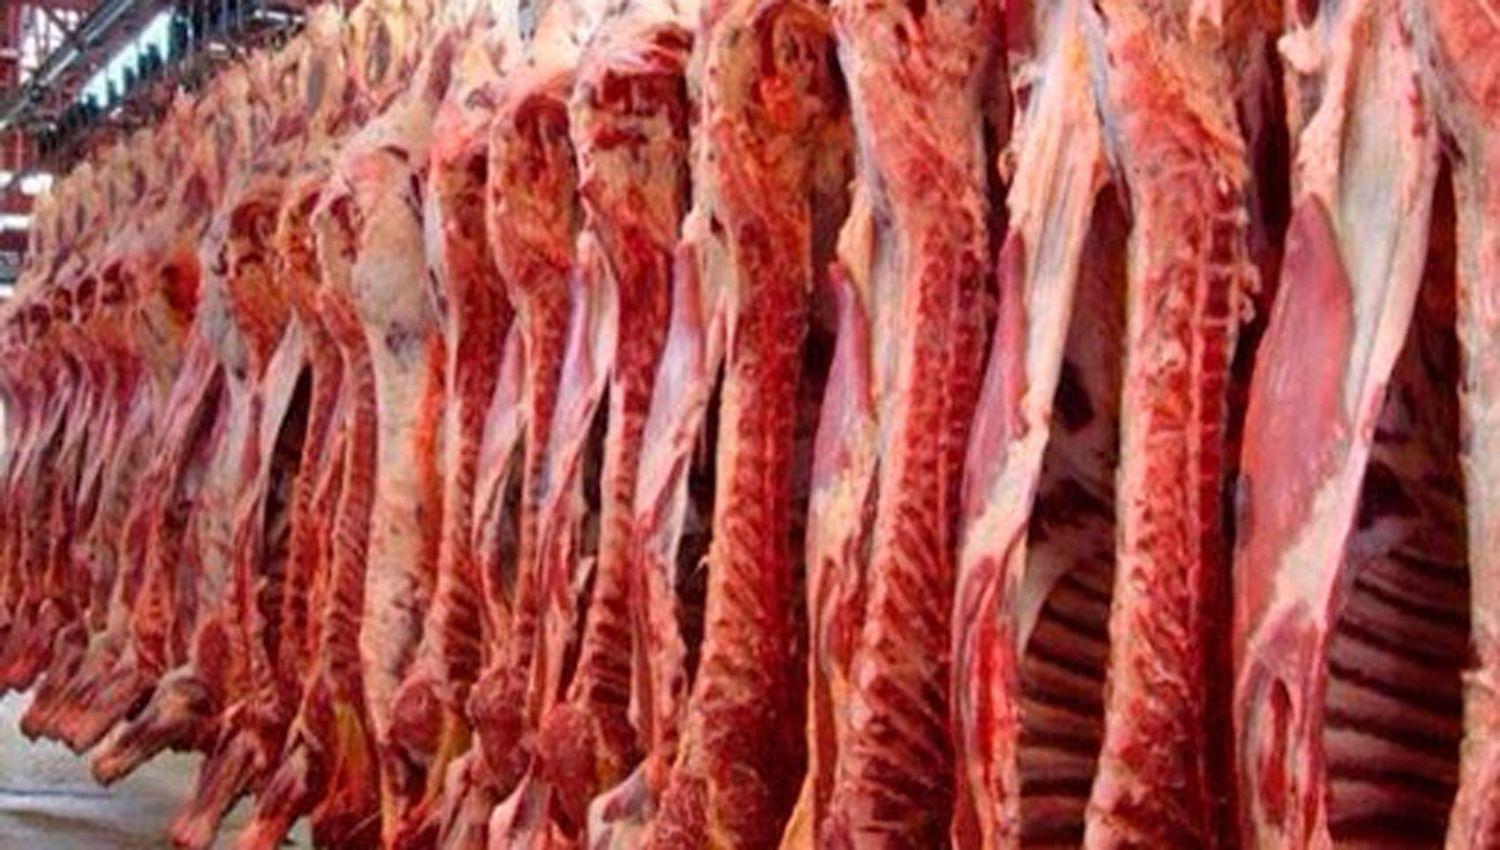 Oficializaron la suspensioacuten de exportacioacuten de carne por 30 diacuteas pero advierten que puede suspenderse si se normalizan los precios